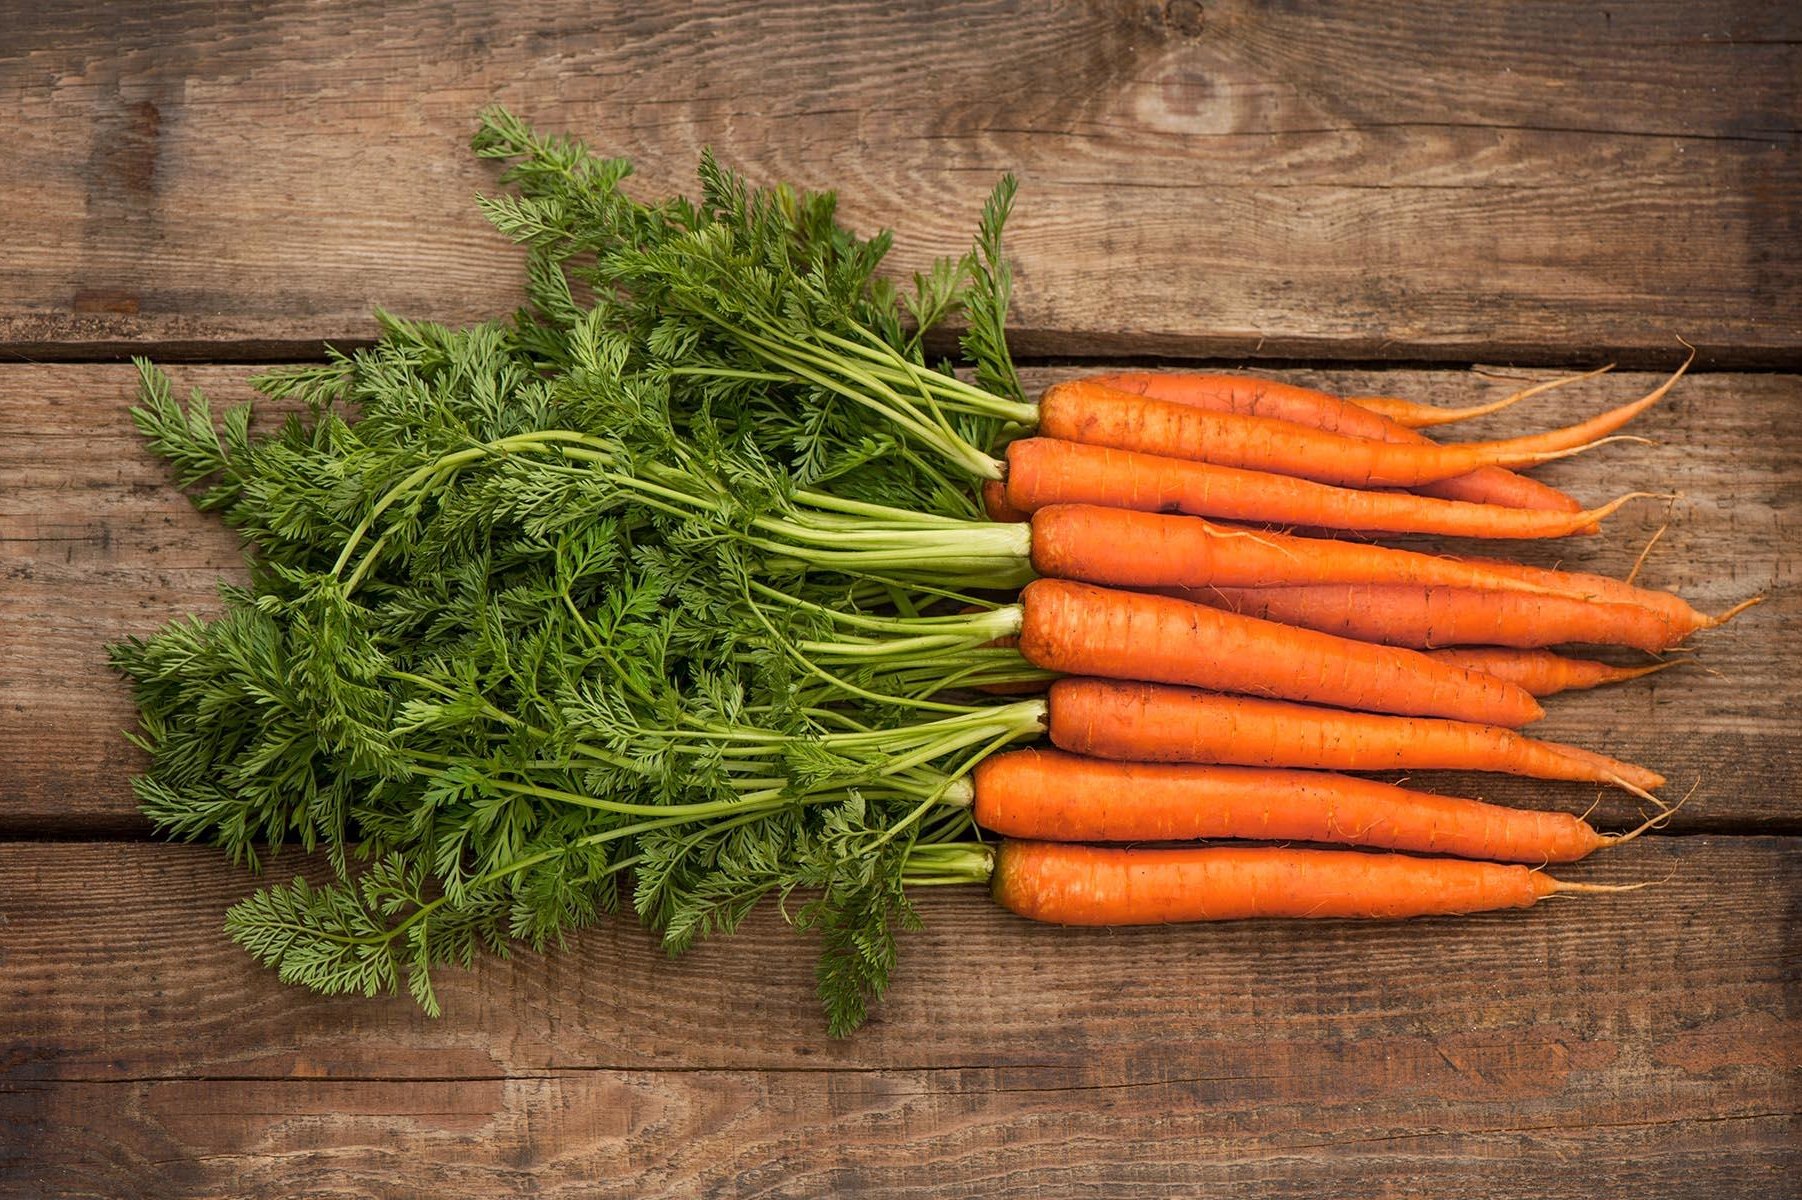 Как посадить морковь осенью под зиму: сроки, правила посадки и ухода